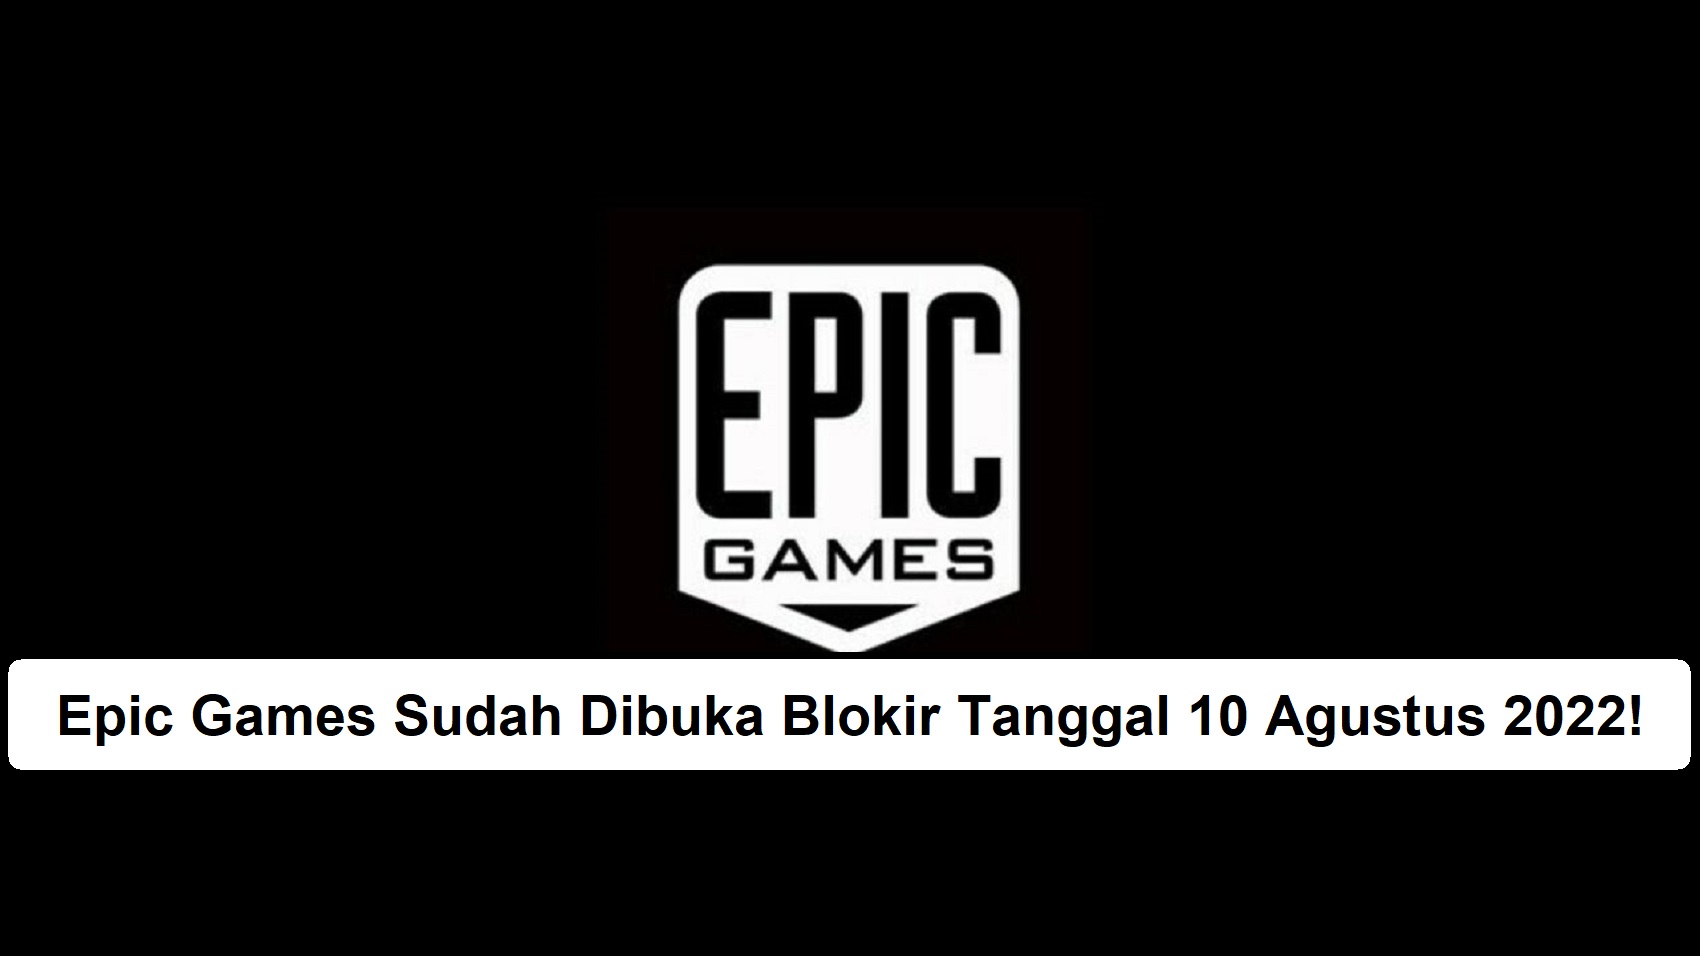 Epic Games Sudah Dibuka Blokir Tanggal 10 Agustus 2022!